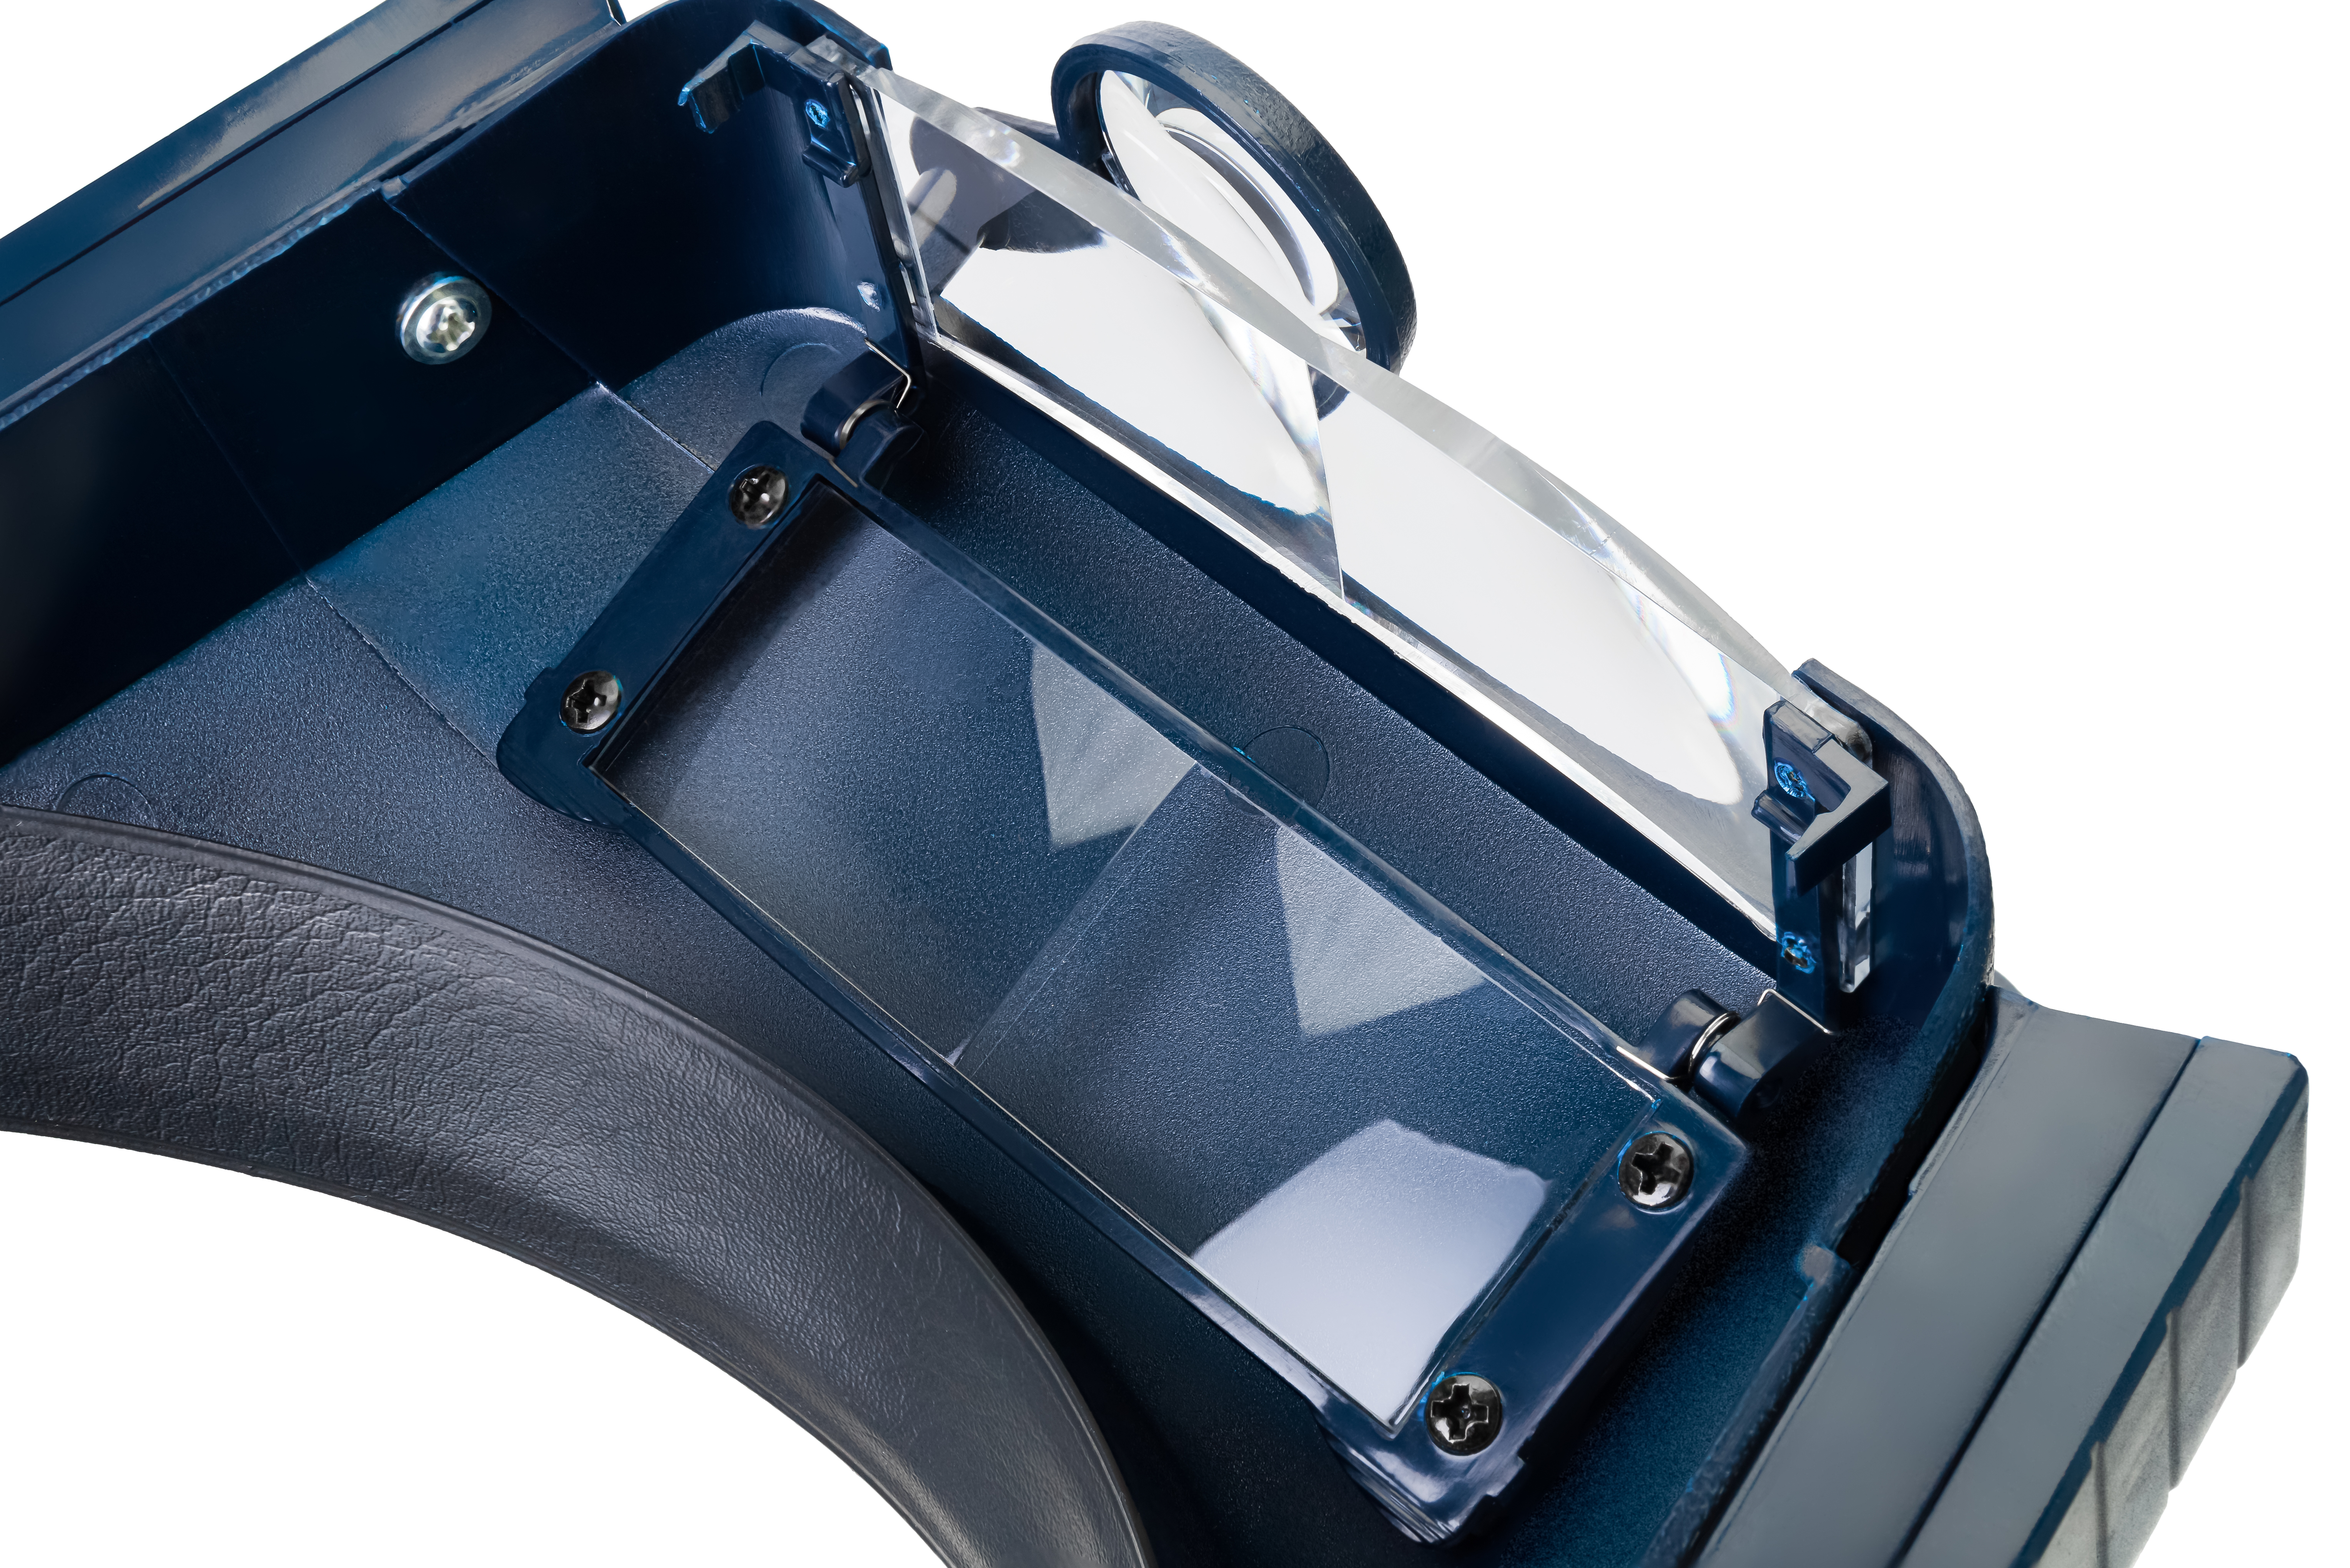 Optická soustava lupy Discovery Crafts DHR 10 se skládá ze 2 obdélníkových čoček nasazených za sebou a 1 kruhové čočky s výklopným designem.